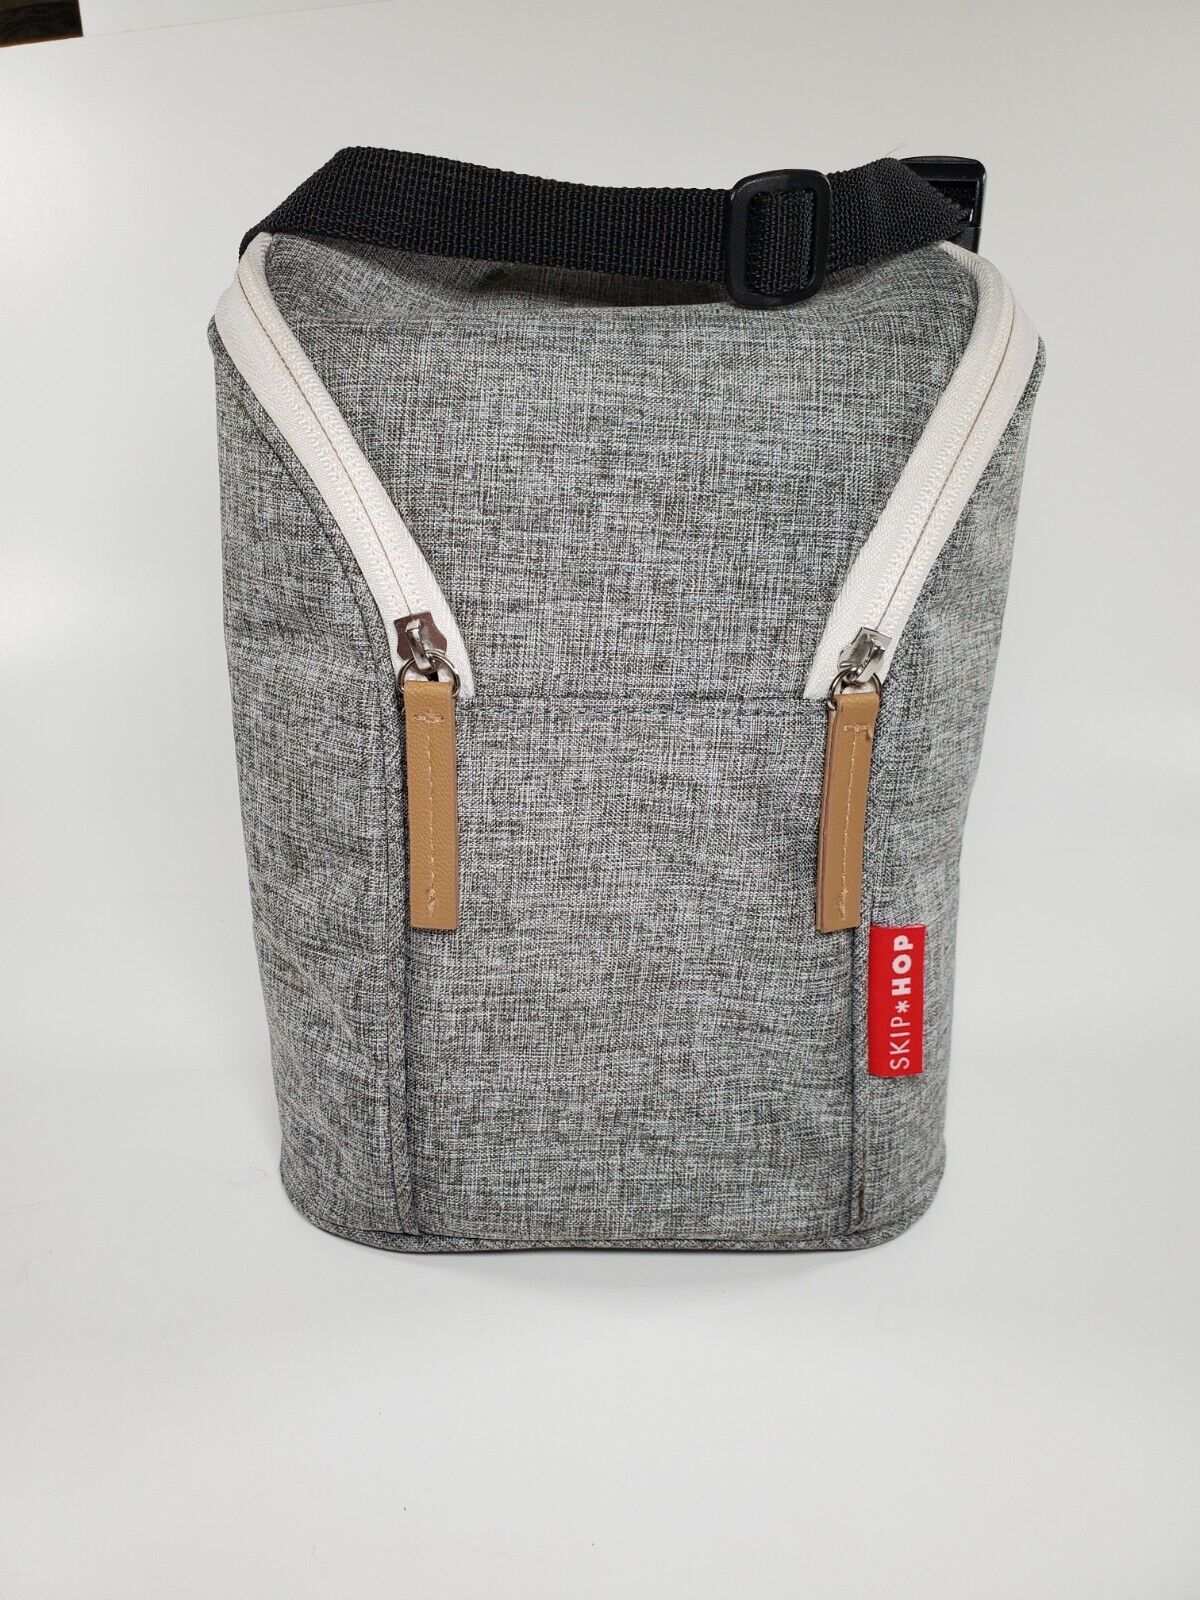 Skip Hop Grab & Go Double Baby Bottle Bag Insulated Cooler Gray Melange